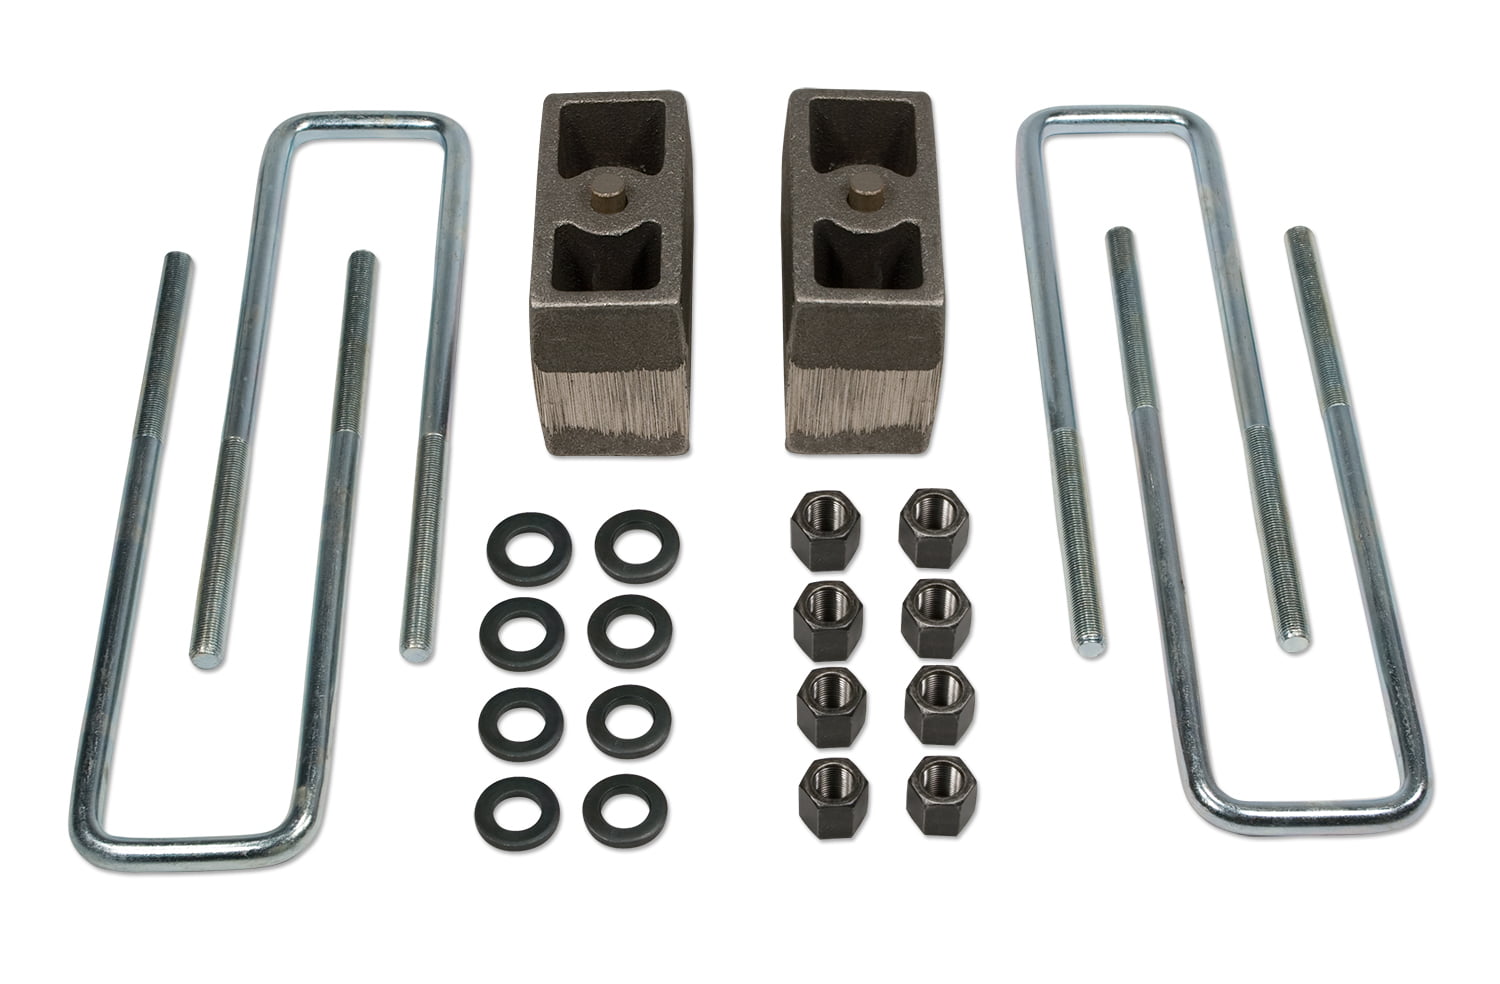 4" lowering blocks fab steel rear axle u bolts drop kit for 99-14 import trucks